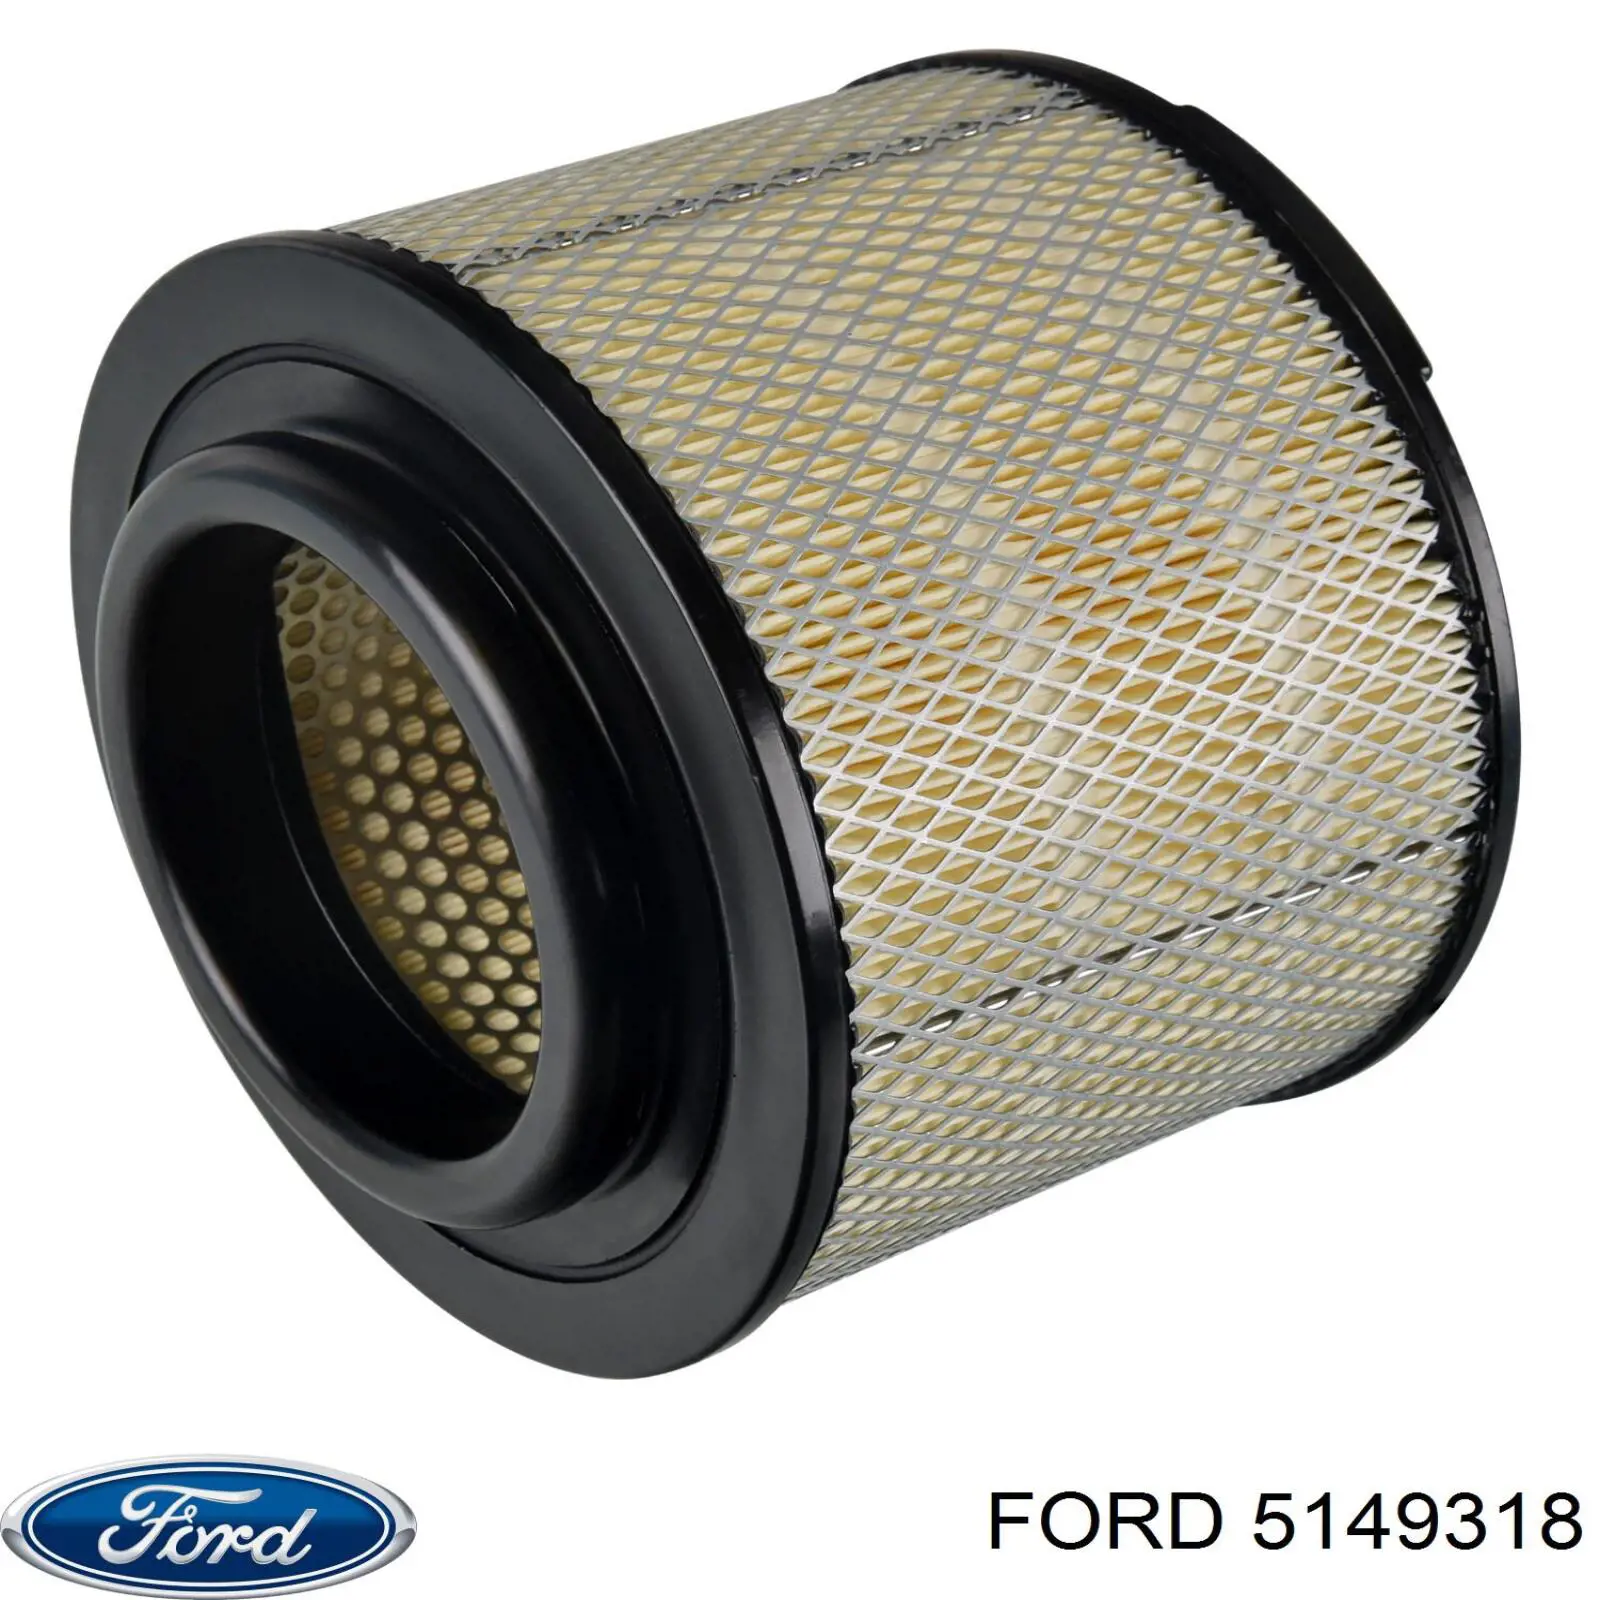 5149318 Ford filtro de aire